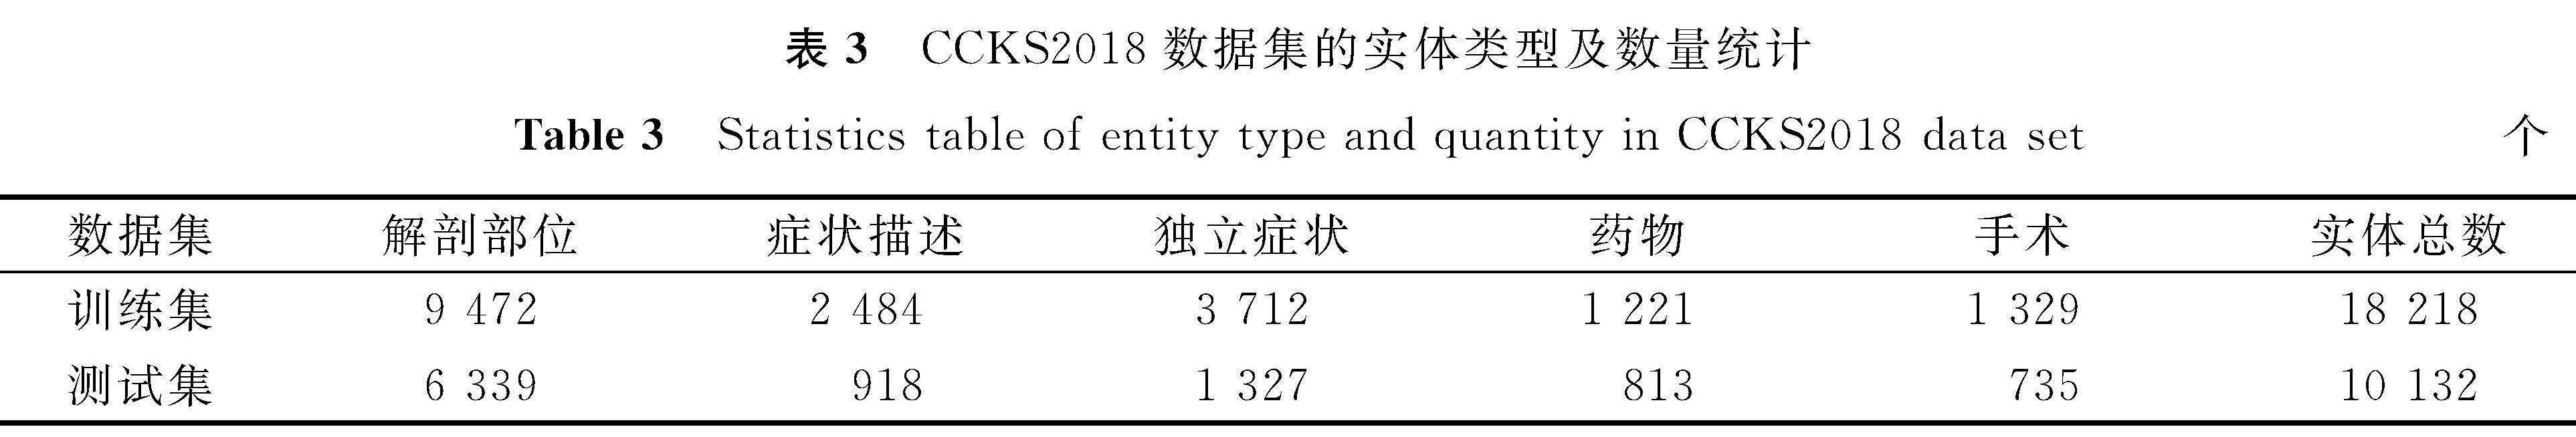 表3 CCKS2018数据集的实体类型及数量统计<br/>Table 3 Statistics table of entity type and quantity in CCKS2018 data set个